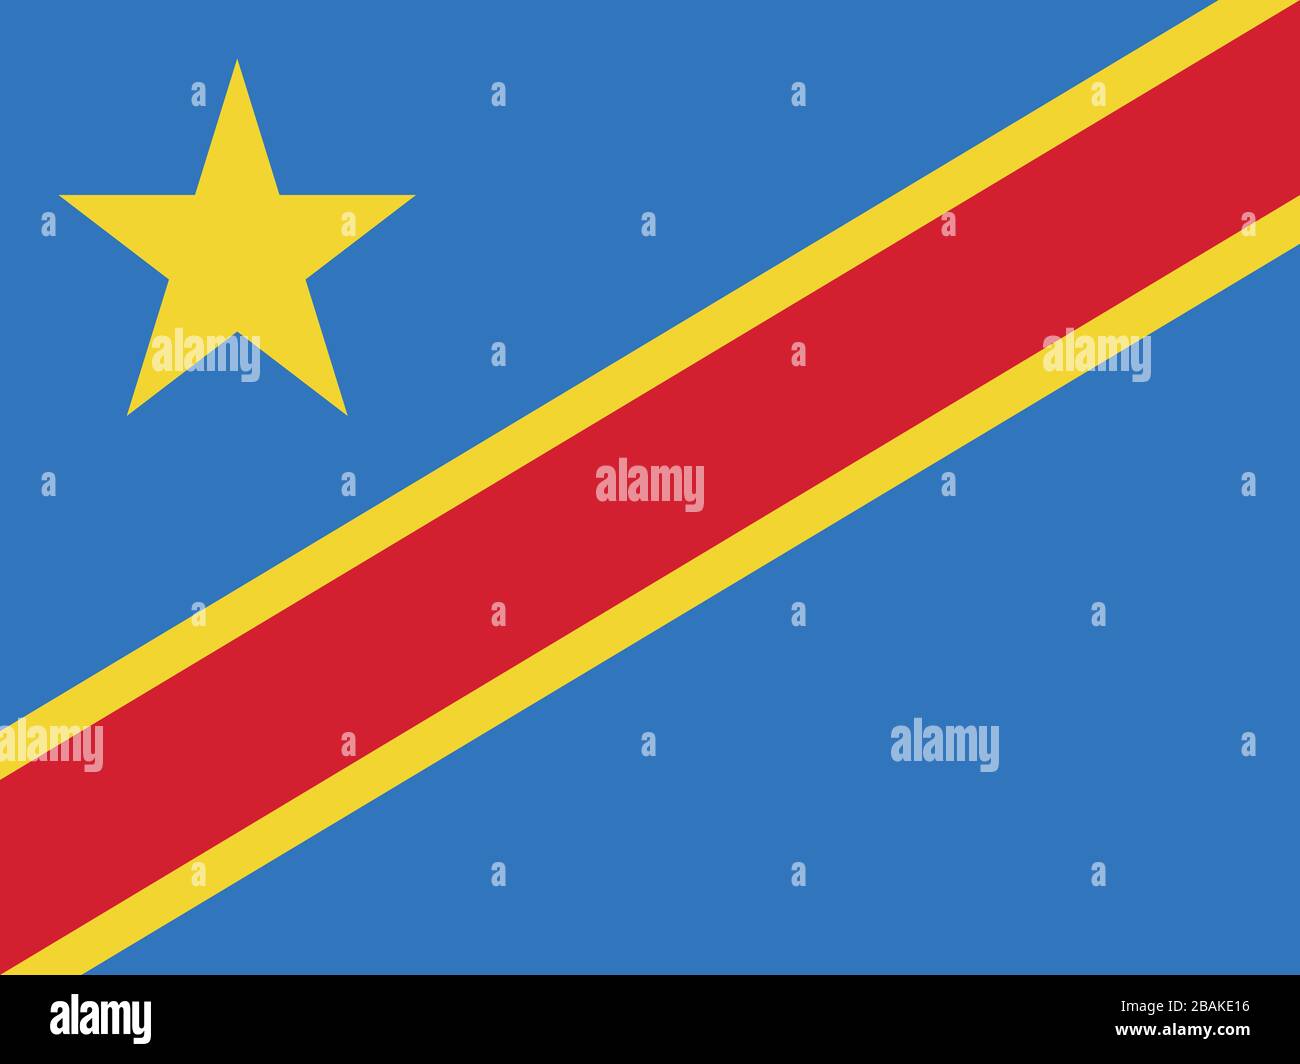 Flagge der Demokratischen Republik Kongo - Standardverhältnis der kongolesischen Flagge - True RGB-Farbmodus Stockfoto